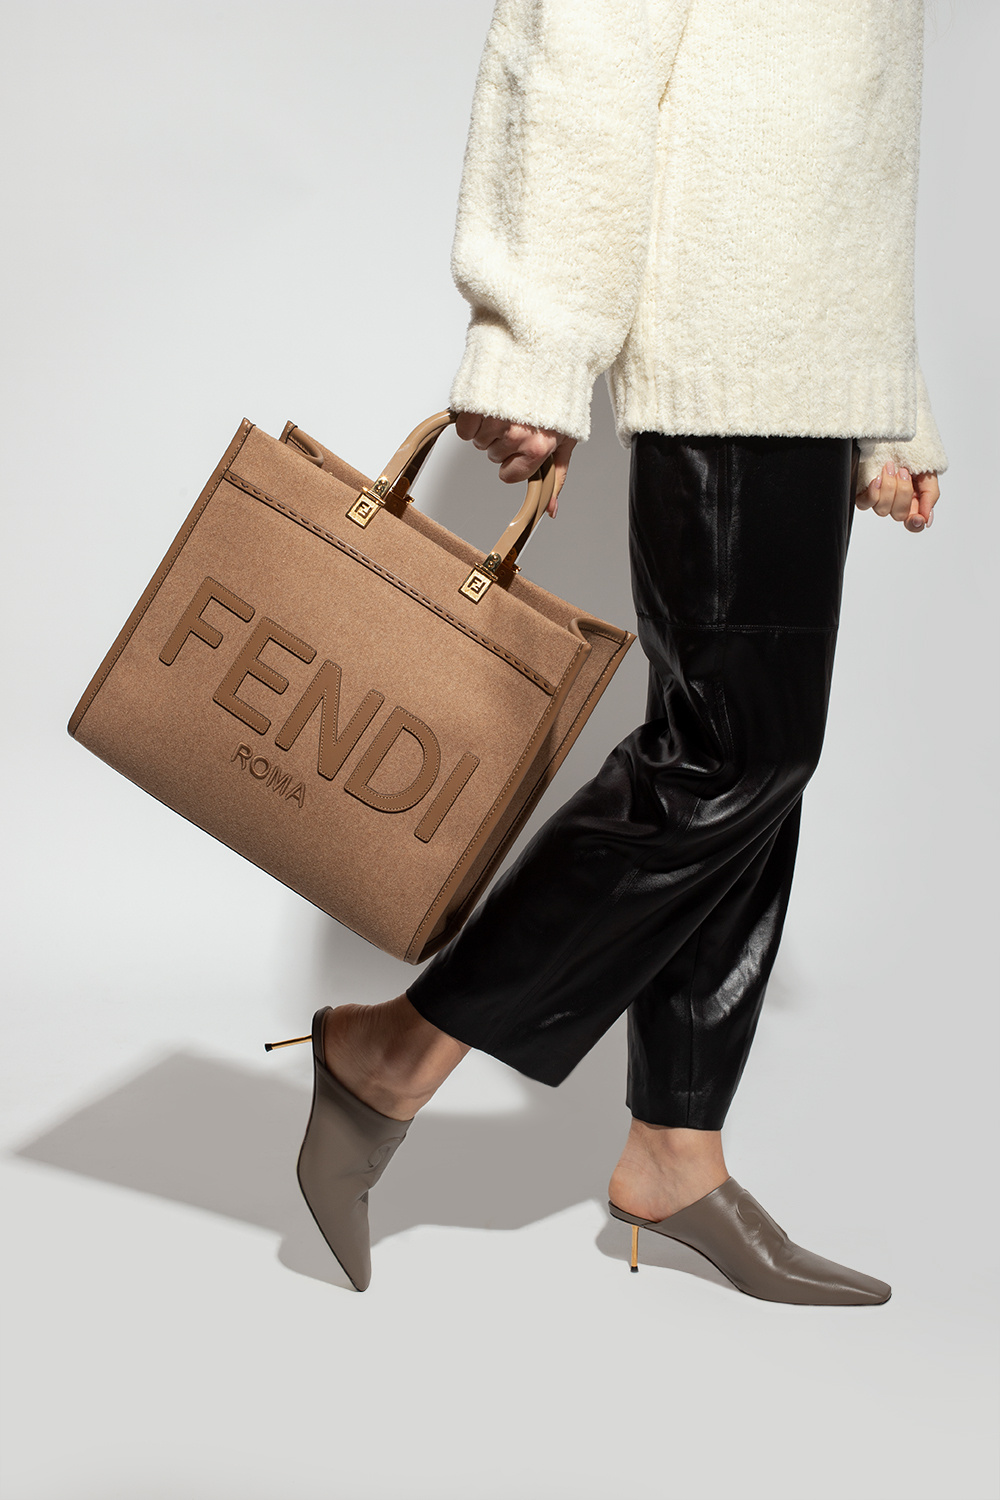 IetpShops Ireland - Brown 'Sunshine Medium' shopper bag Fendi FENDIRAMA - Fendi  FENDIRAMA Loafers for Women